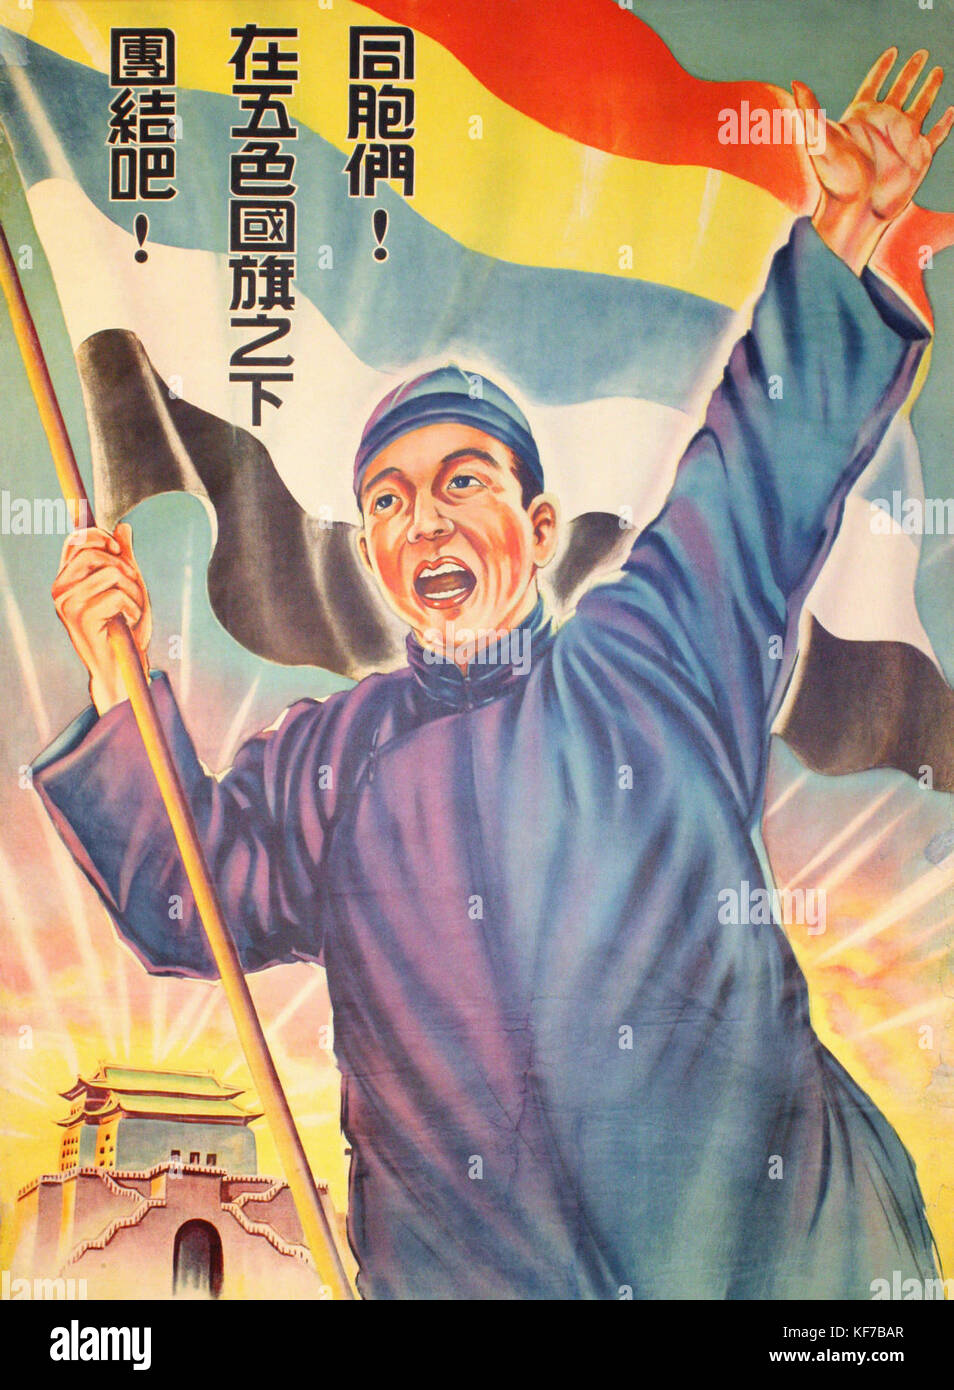 Poster di propaganda, in cinese, prodotta dalla giapponese-sponsorizzato i governi in Cina durante la guerra Sino-Japanese (1937-1945). Questi governi sono stati stabiliti dai principali giapponese i comandi militari e i manifesti sono stati utilizzati per promuovere la cooperazione fra il cinese e il giapponese. Traduzione in inglese è "Connazionali, cerchiamo di unire sotto i cinque-colorata bandiera nazionale!": 同胞們！在五色國旗之下團結吧! Foto Stock